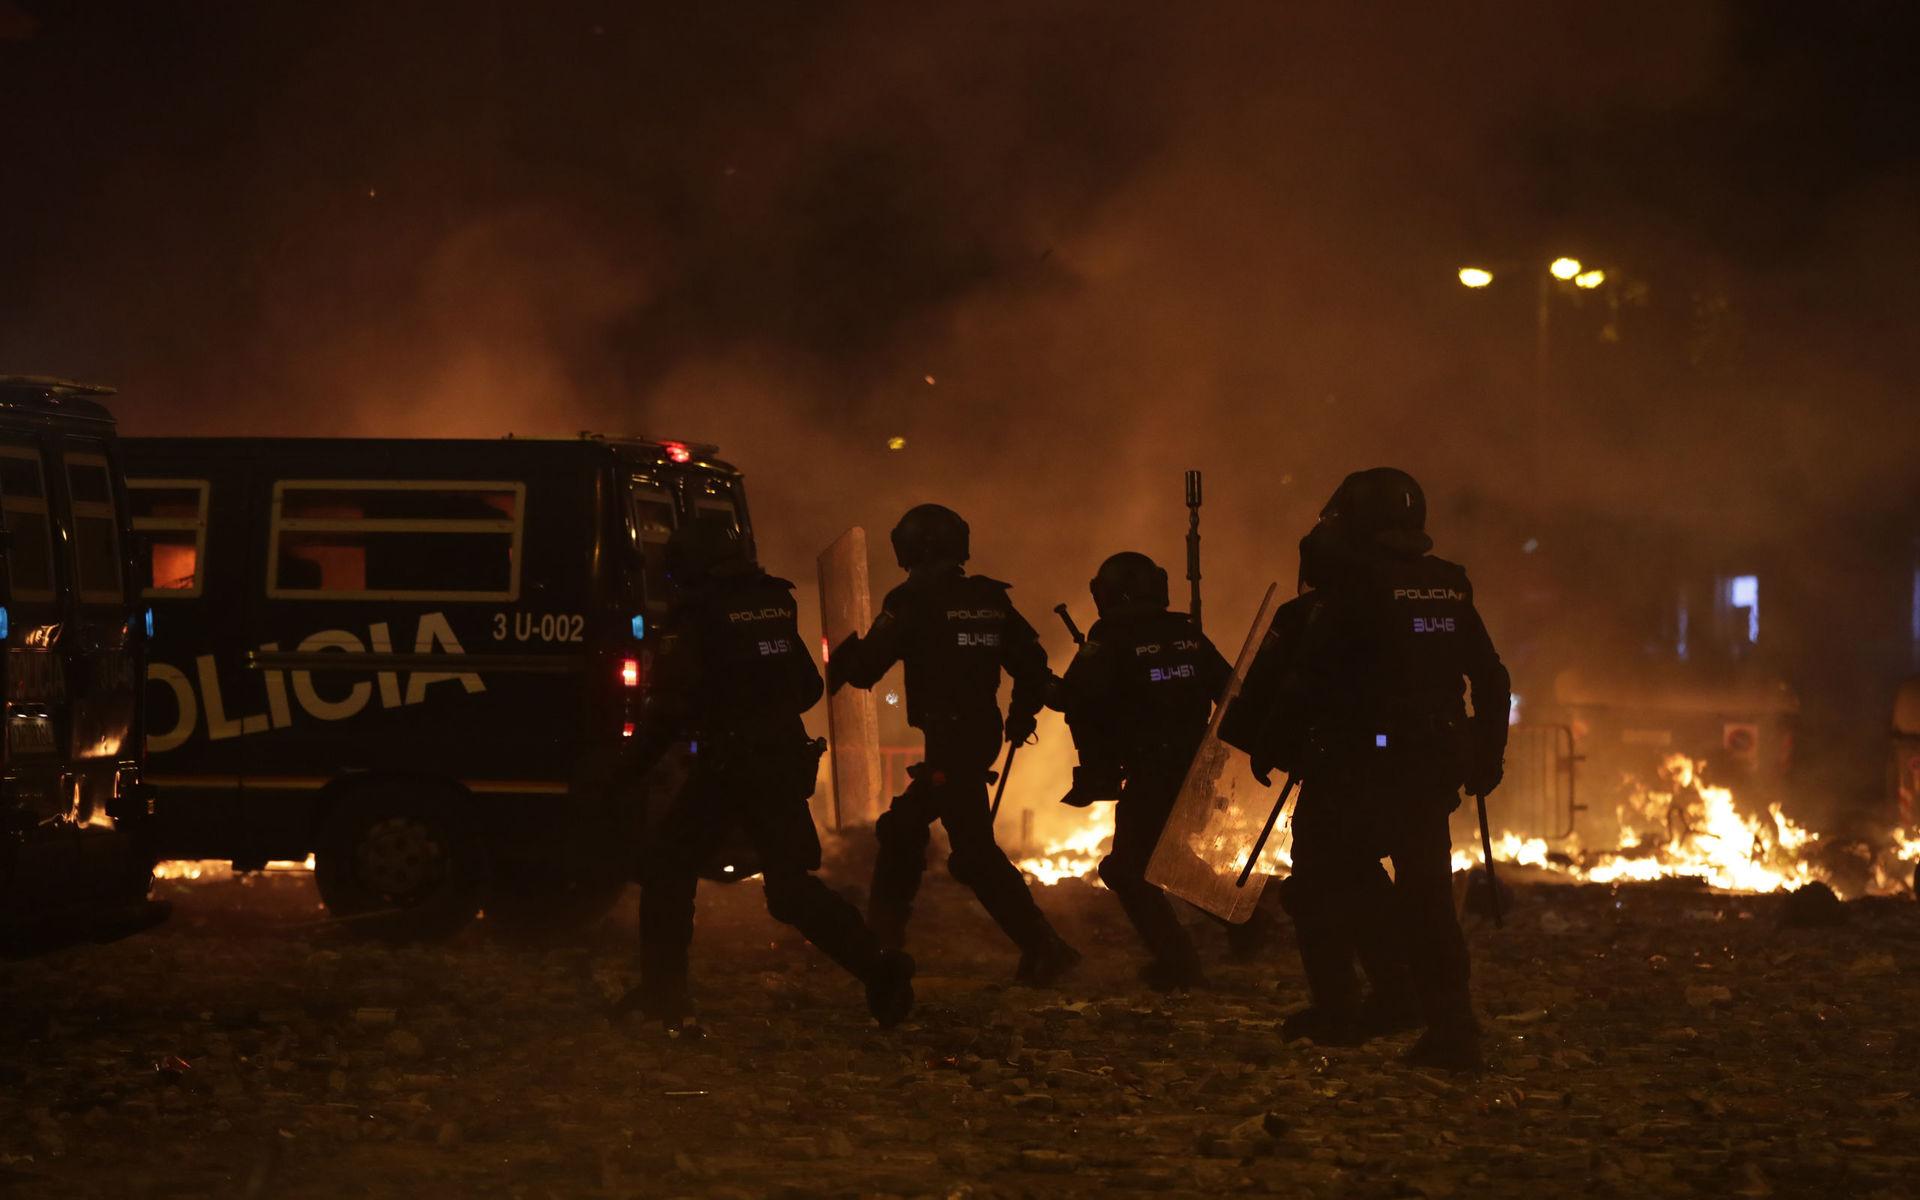 Polis framför brinnande barrikader nära Placa de Catalunya.